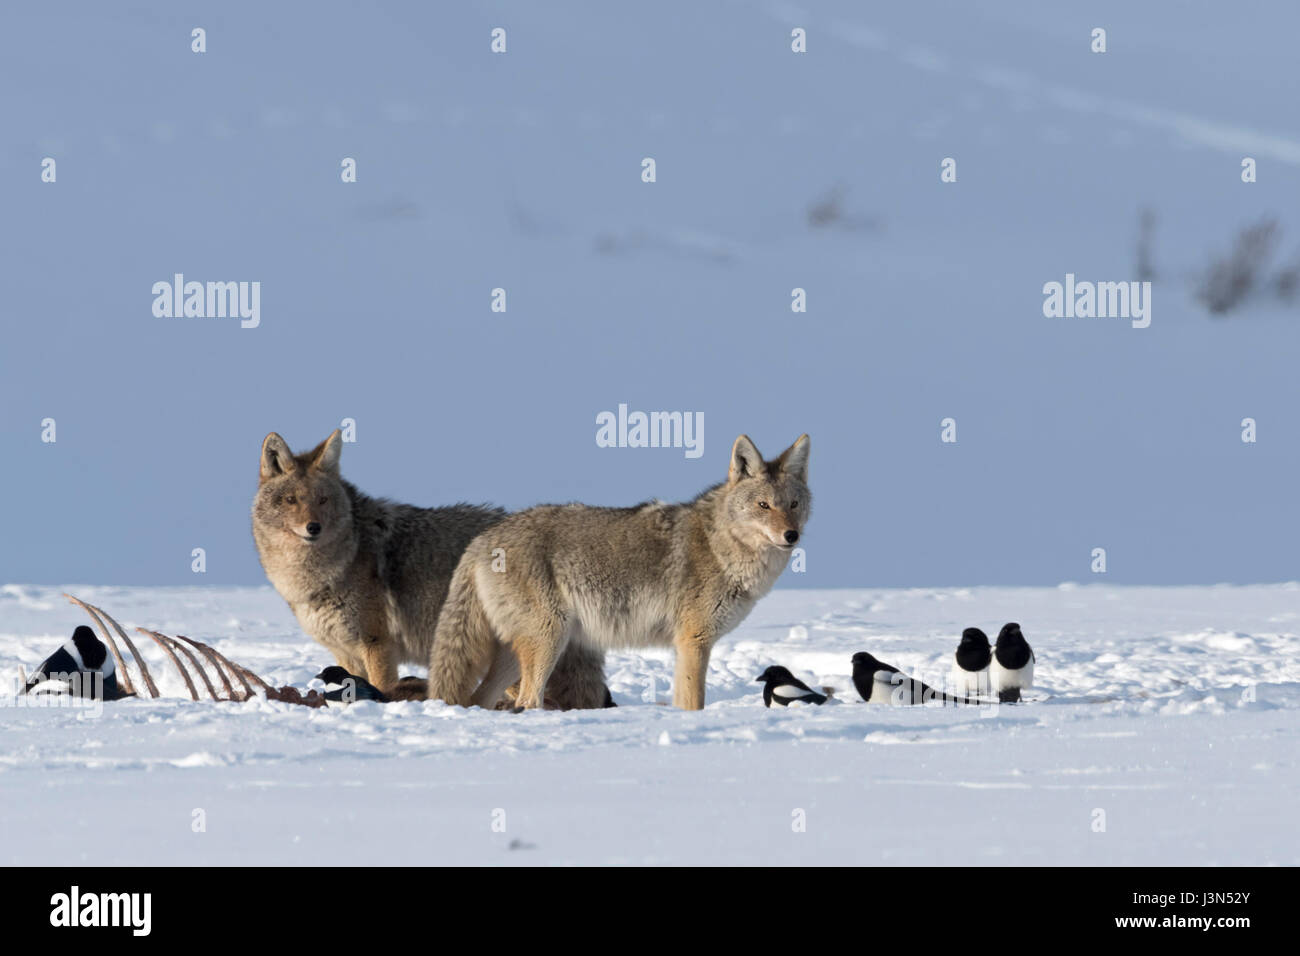 Les Coyotes (Canis latrans), en hiver, la neige, debout à côté d'une carcasse, avec quelques pies, Yellowstone National Park, Wyoming, USA. Banque D'Images